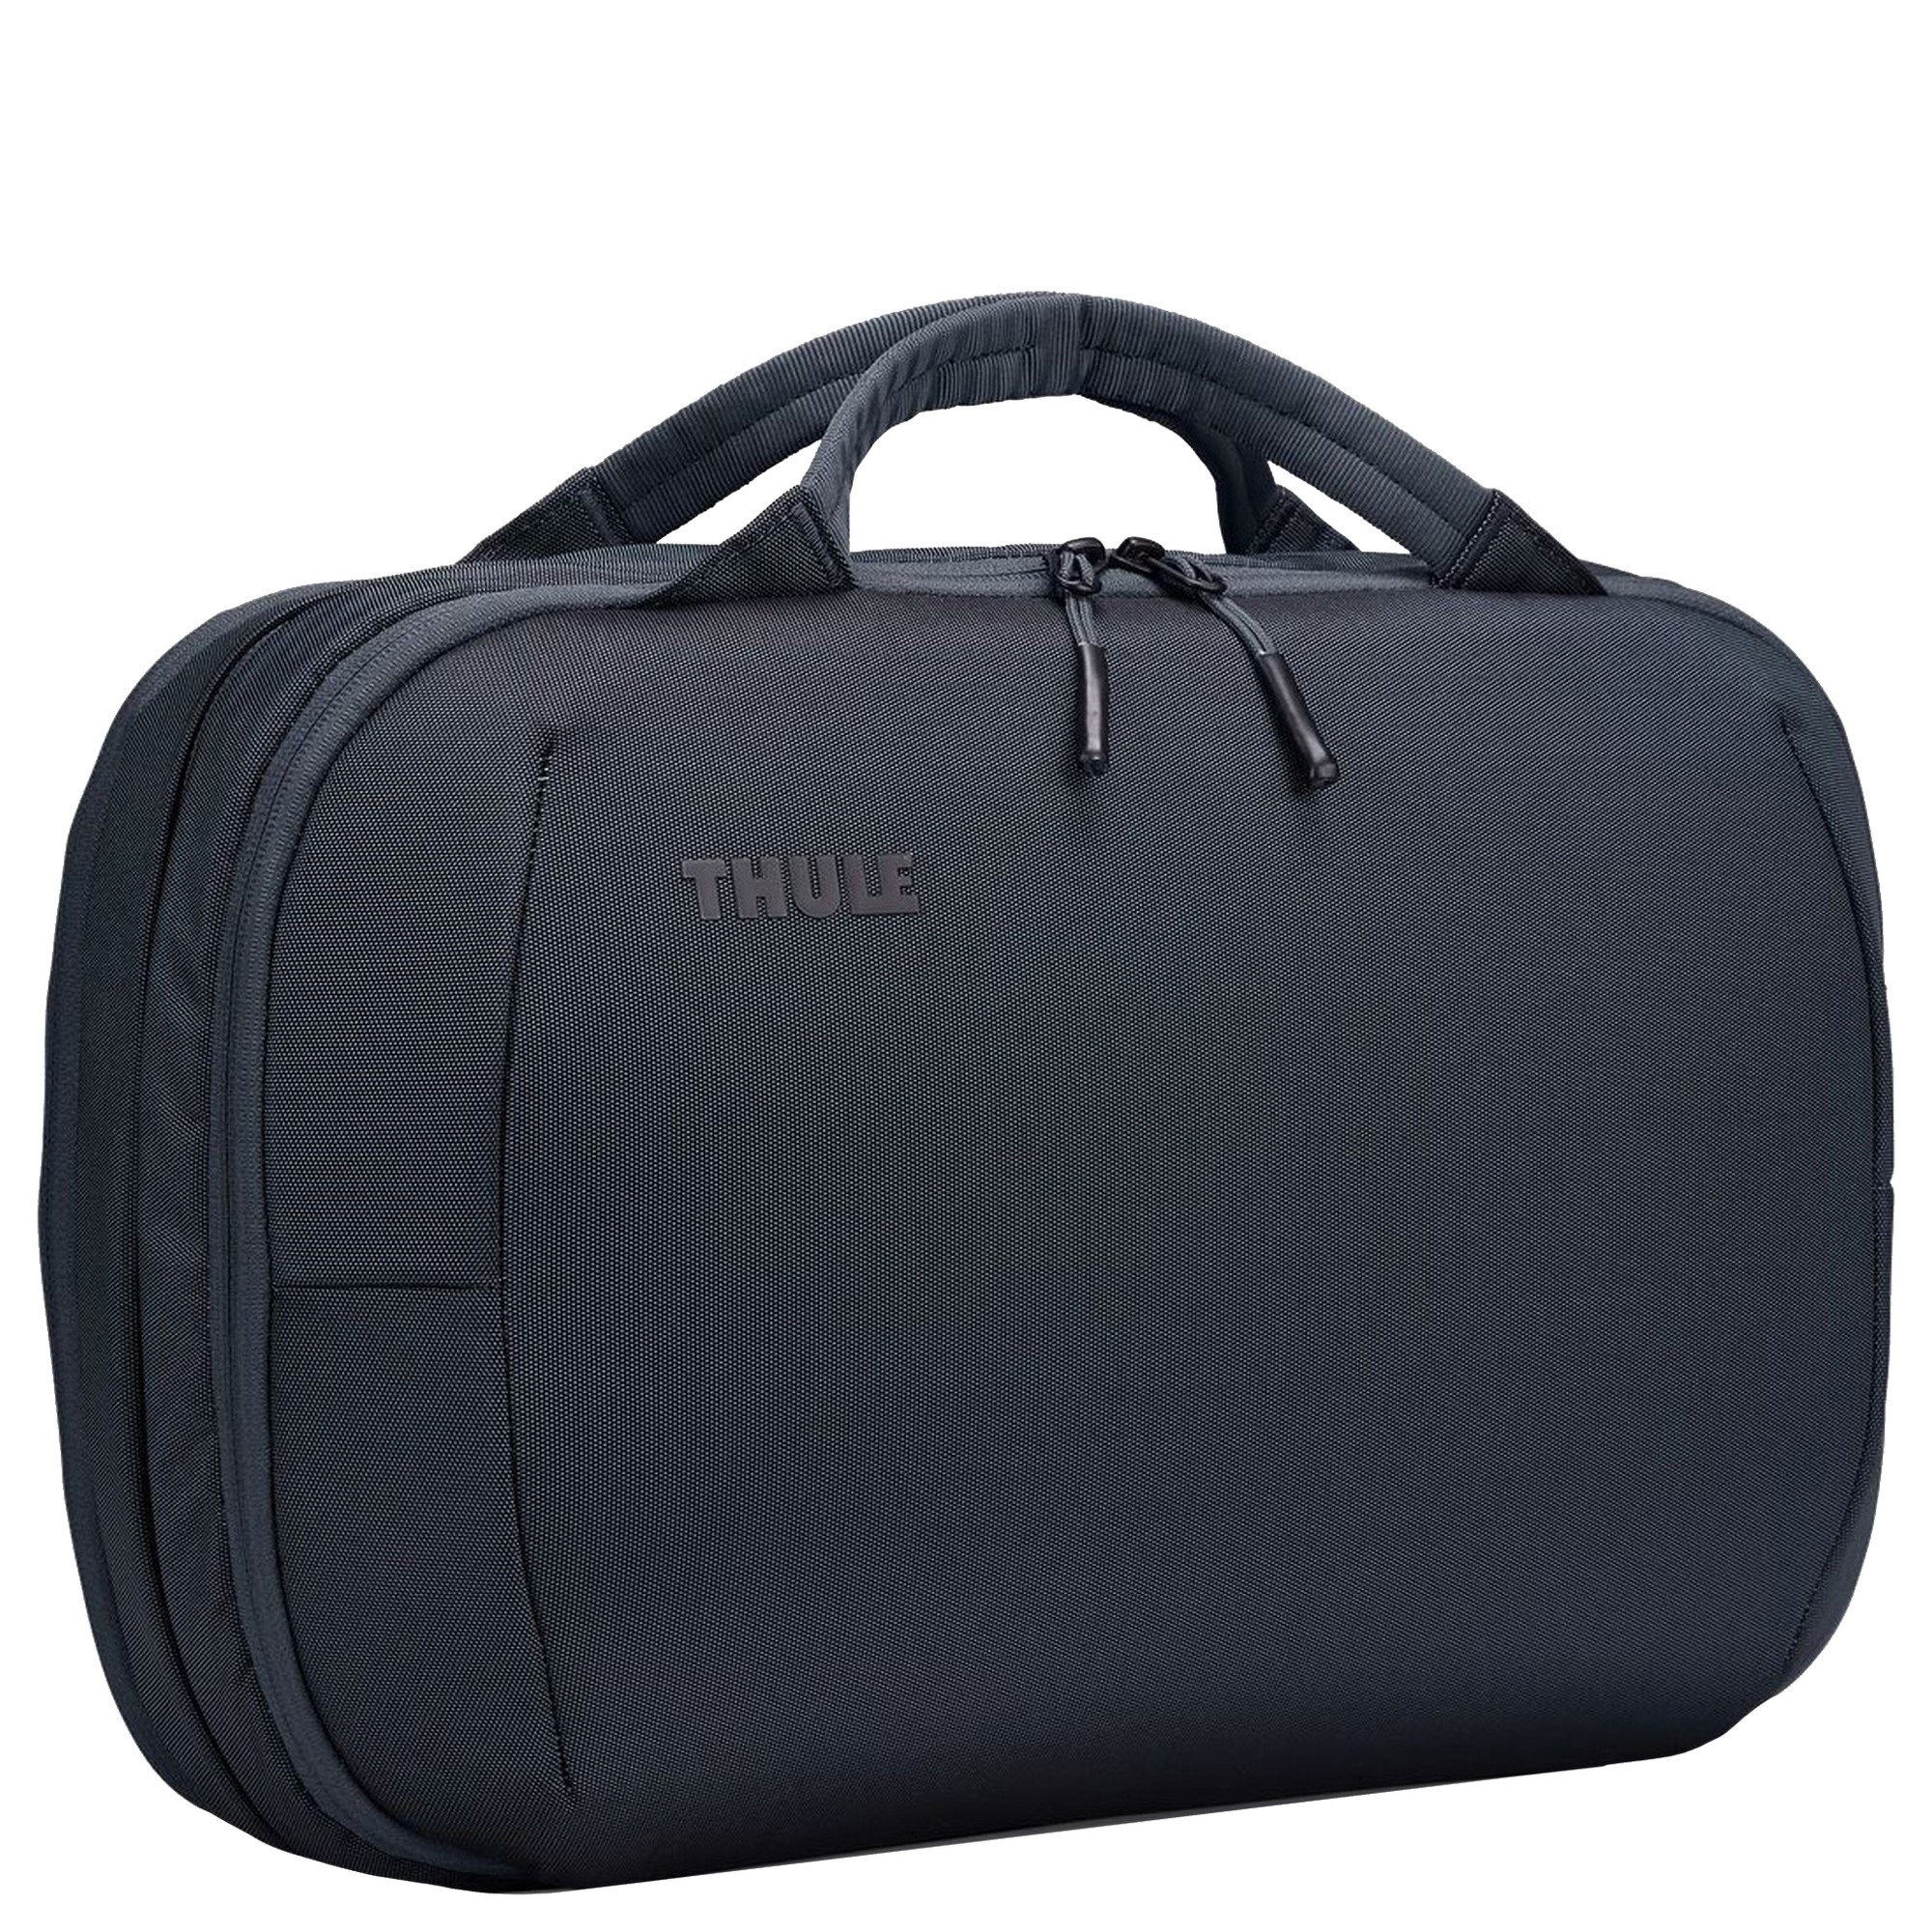 Сумка для ноутбука Thule Subterra 2 Hybrid Reise/16 38 cm erw., цвет dark slate